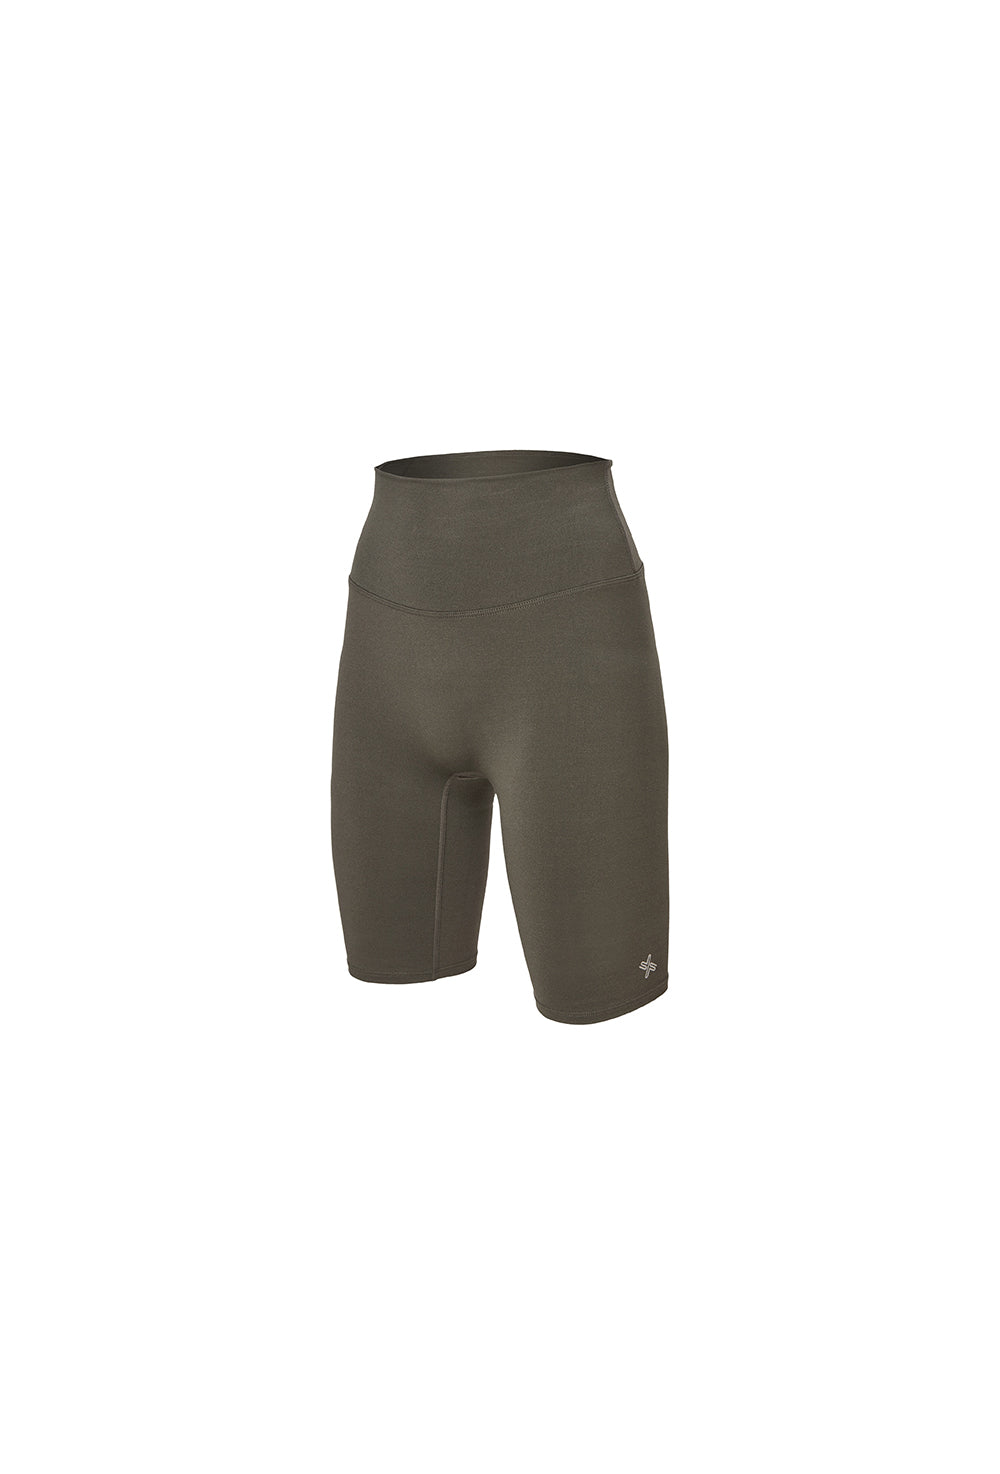 XELLA Intention 5 Biker Shorts - Grayish Khaki